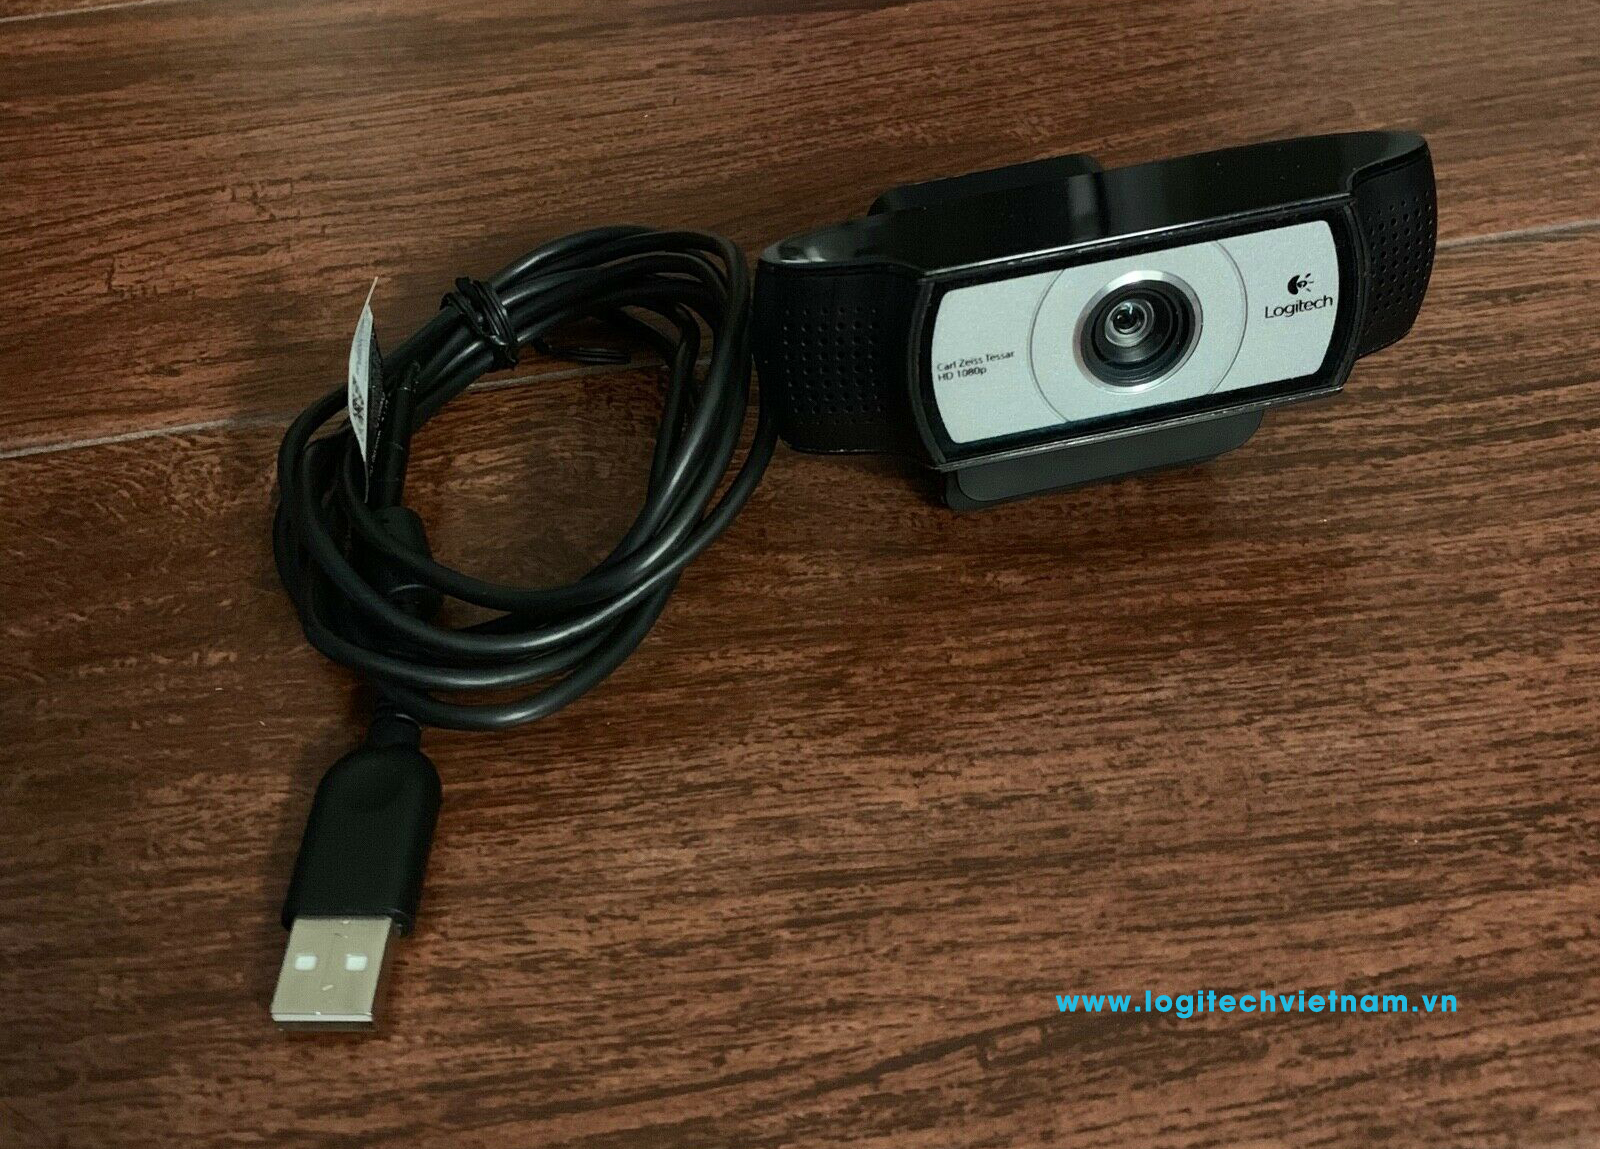 Webcam cho phòng họp logitech C930E rẻ?